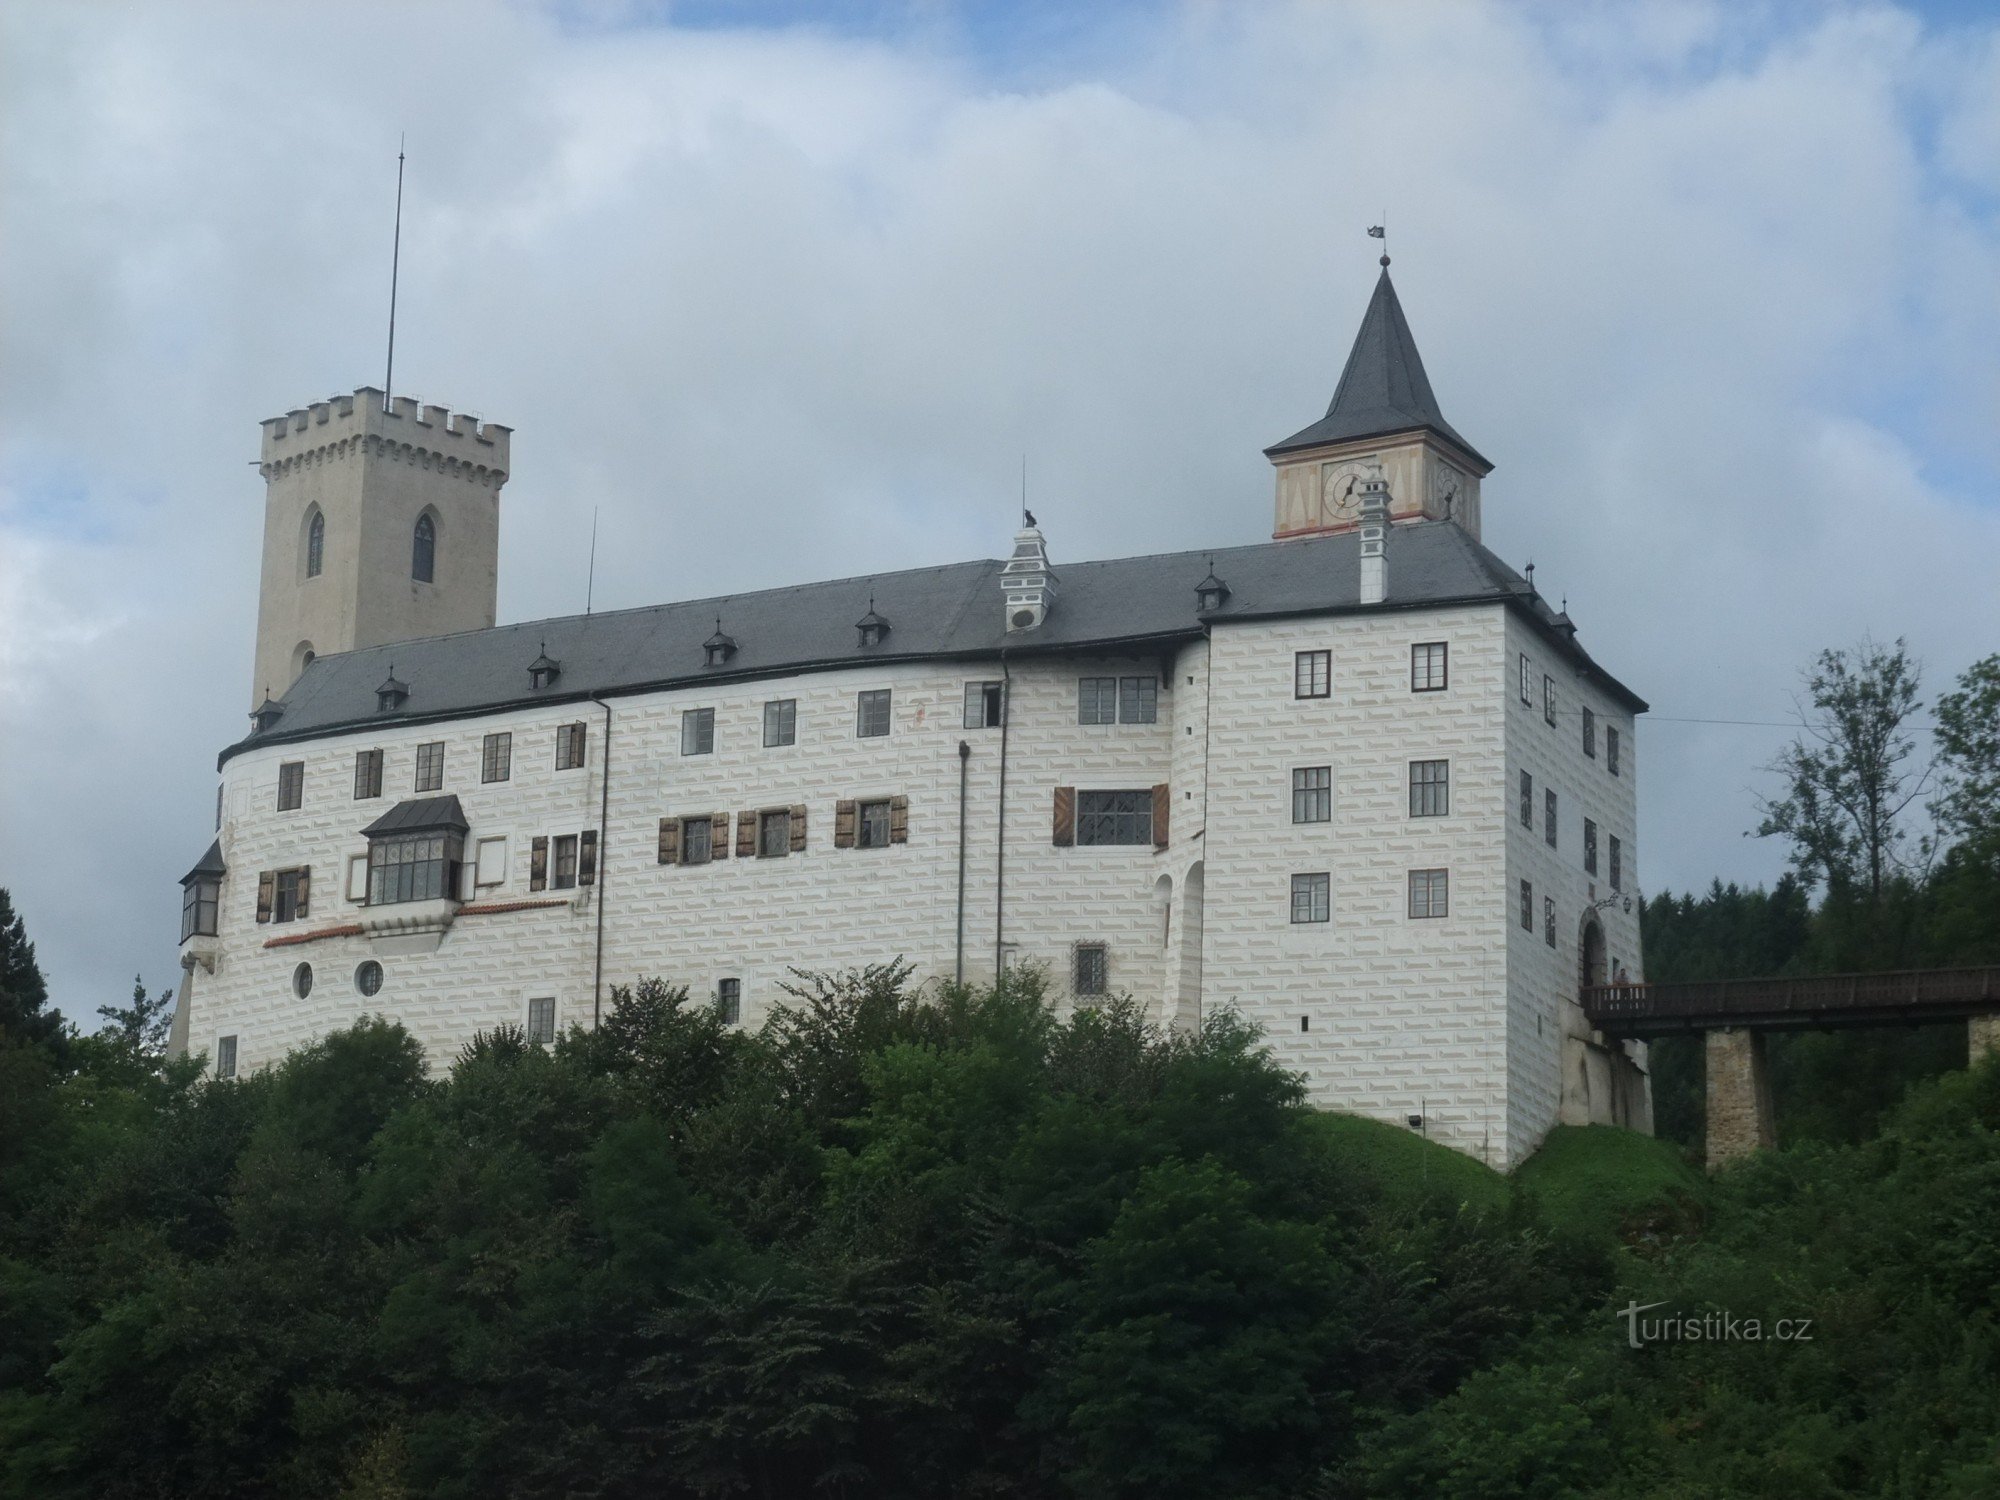 Castle Rosenberg